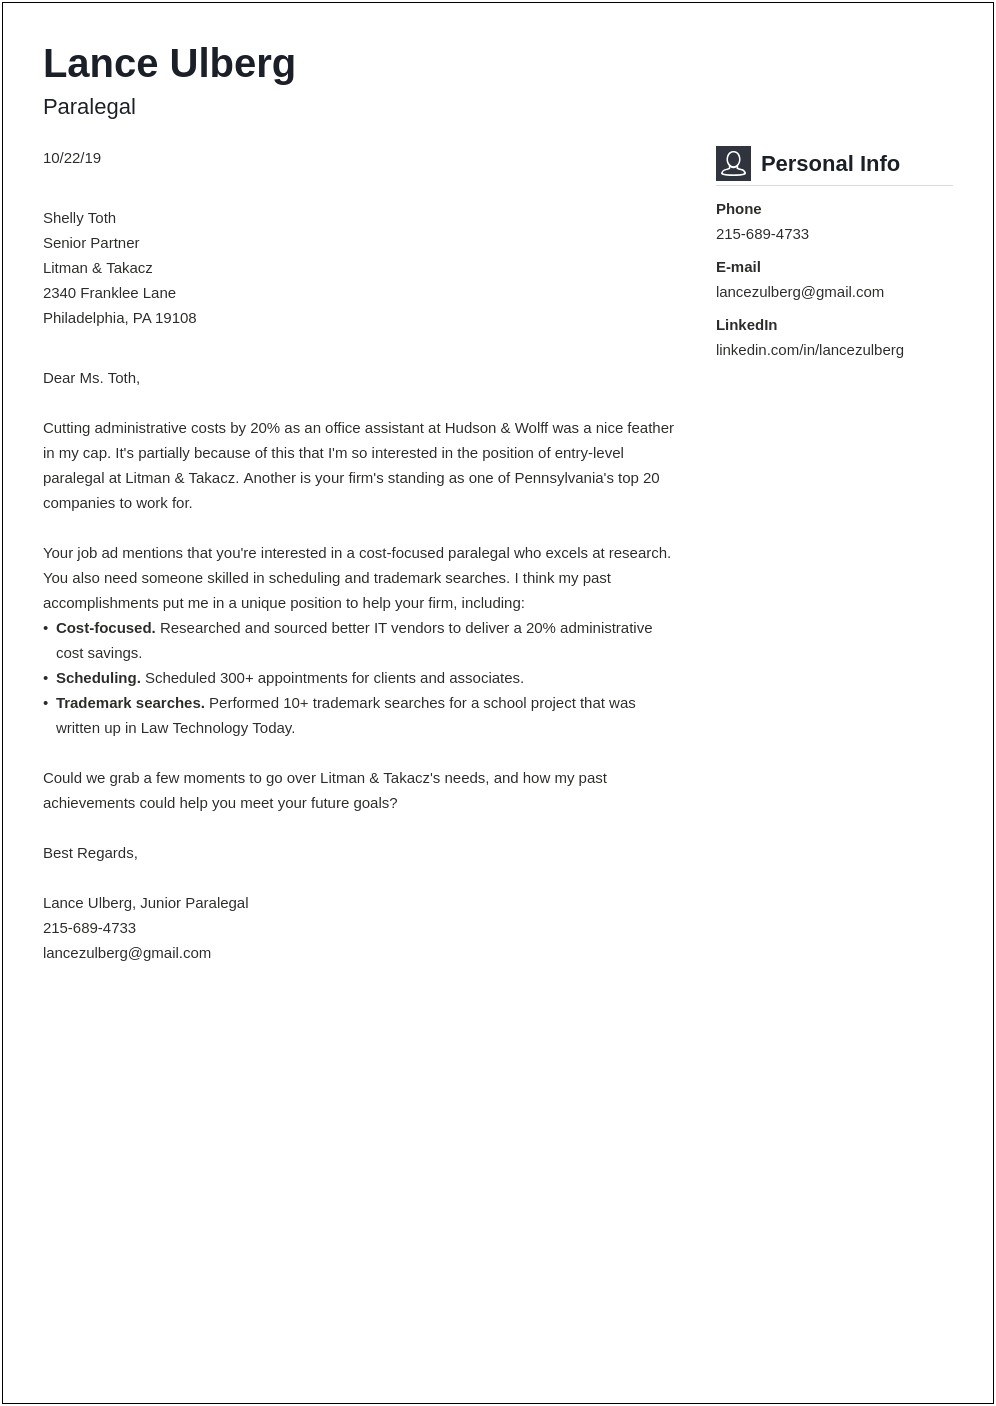 Resume Cover Letter For Paralegal Job